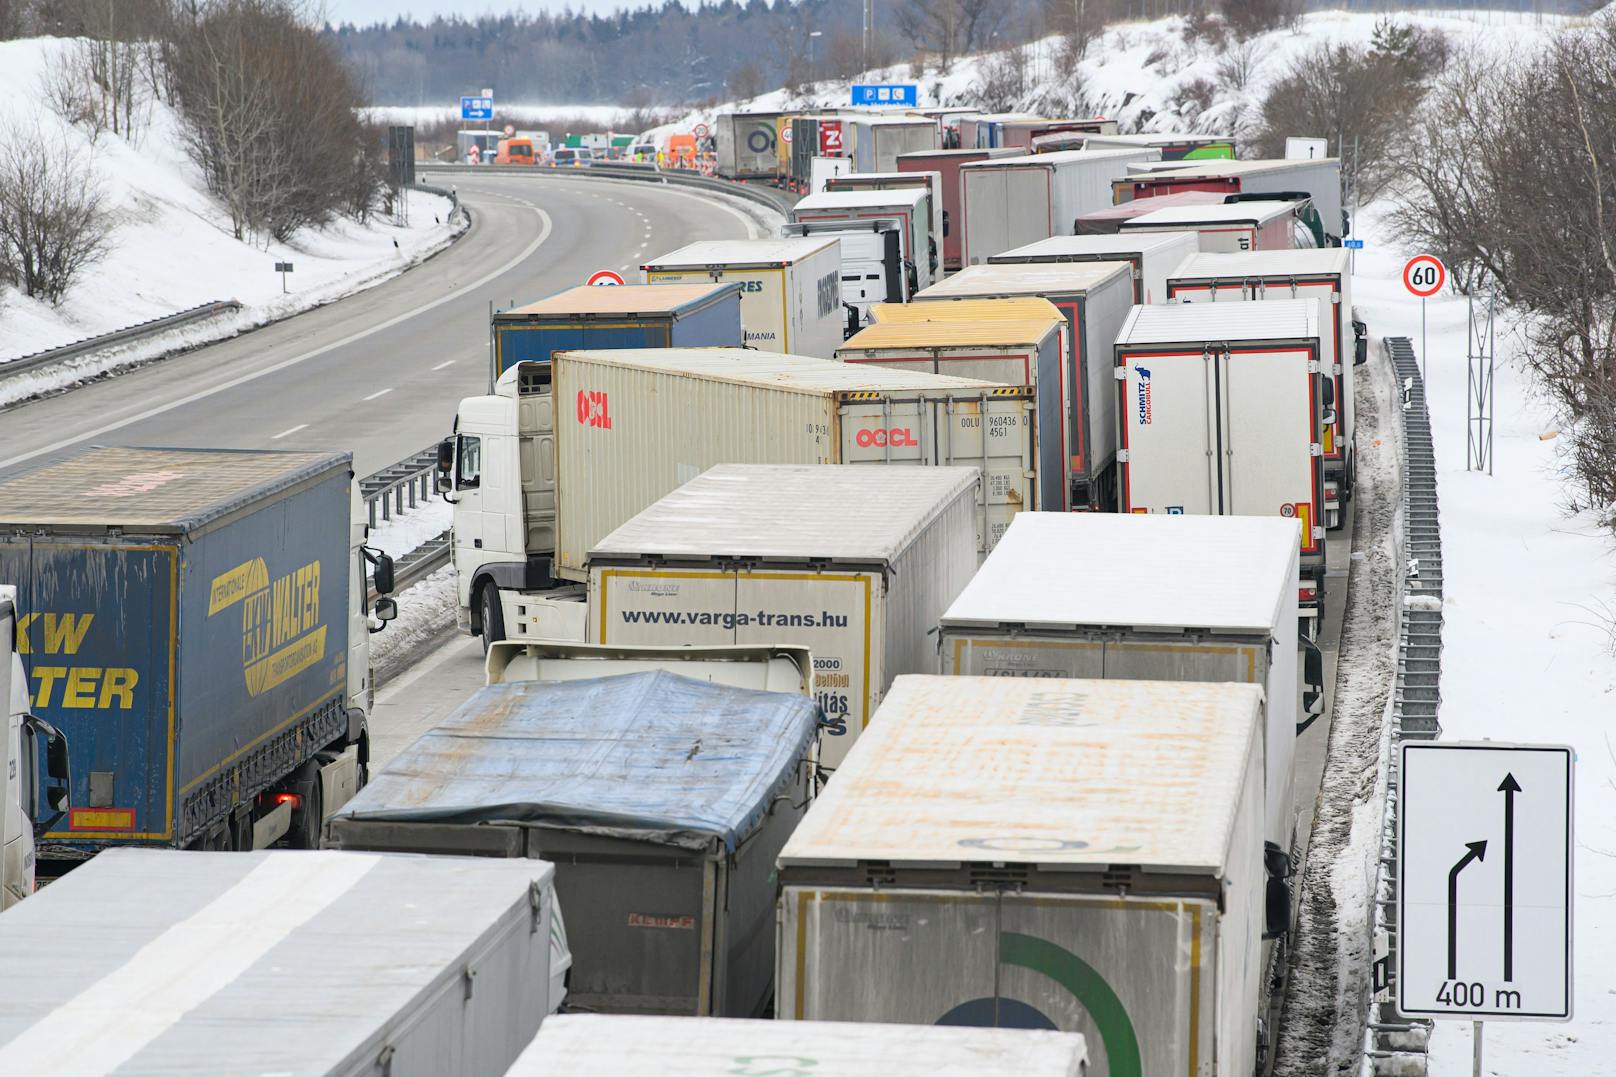 Laster stauen sich am 15.2.2021 auf der deutschen Autobahn 17 in Richtung Dresden. Bundespolizisten kontrollieren Einreisende in der Nähe des Grenzübergangs zu Tschechien.